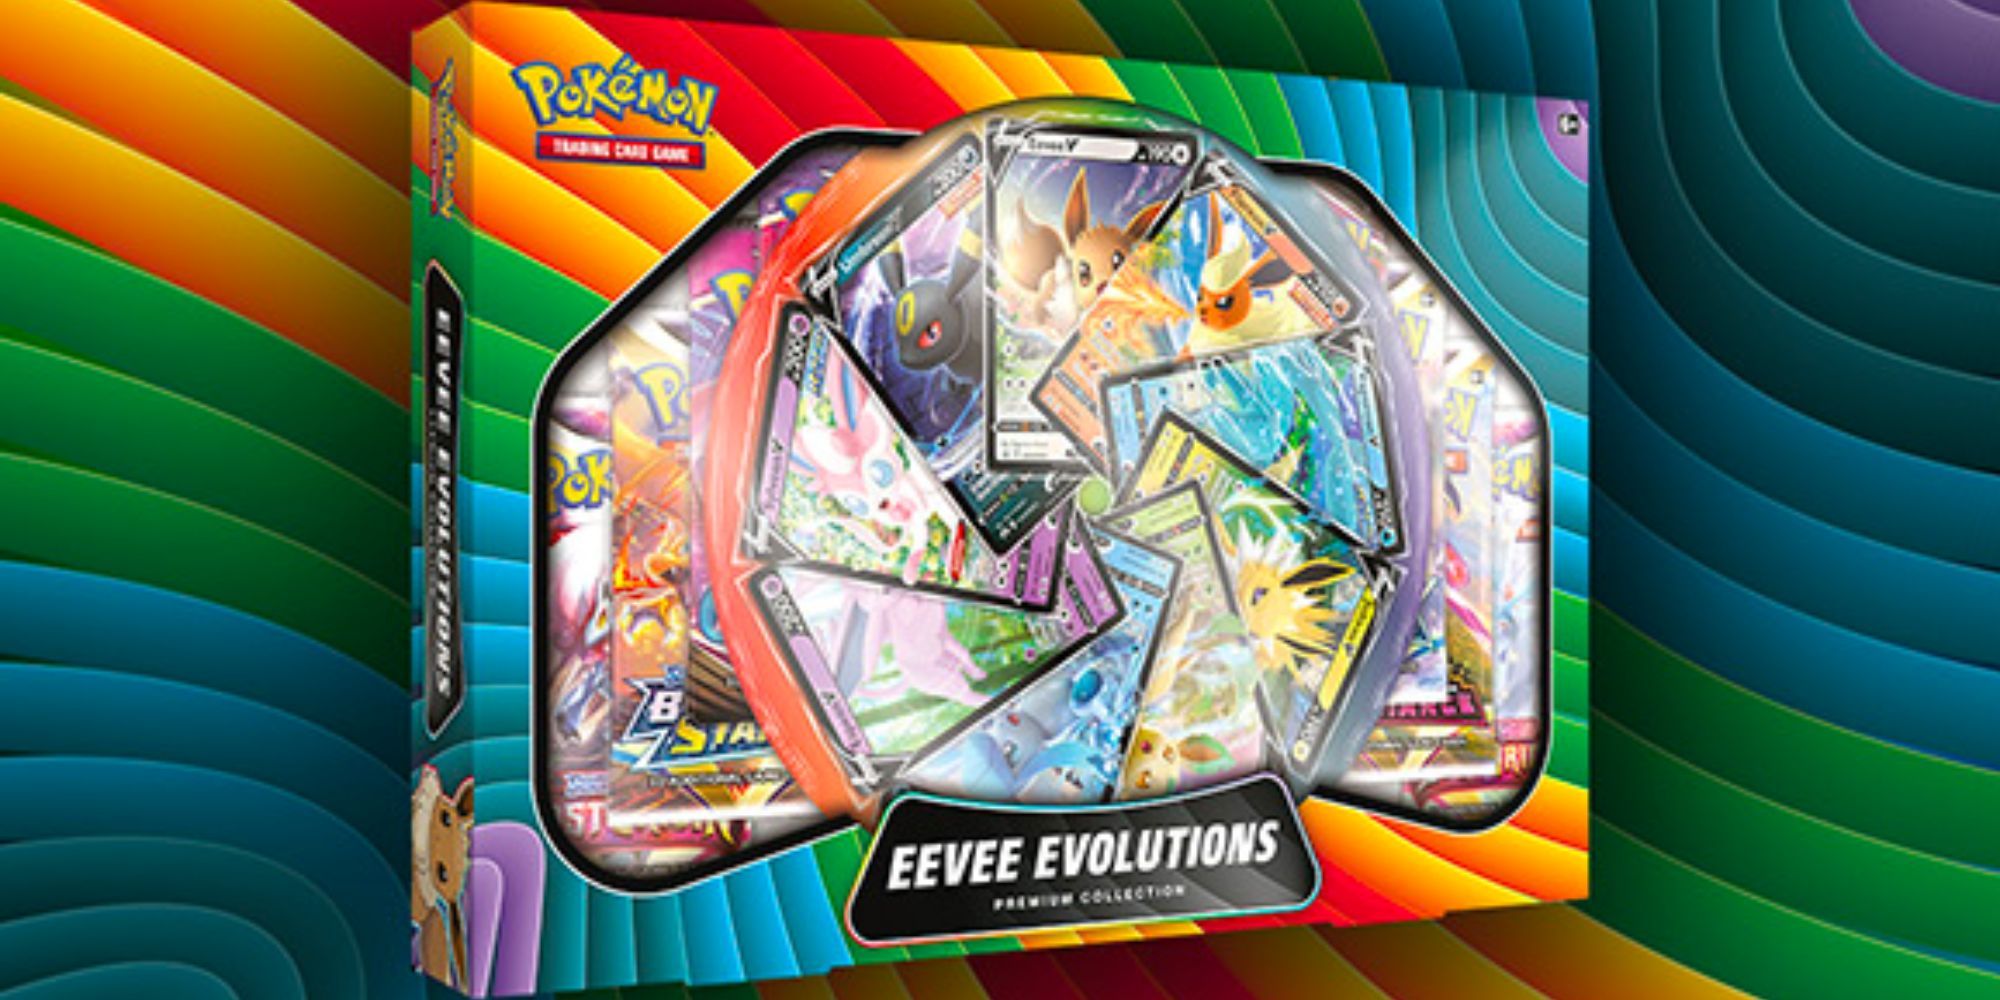 Eevee Evolutions Premium Collection in the Pokemon TCG